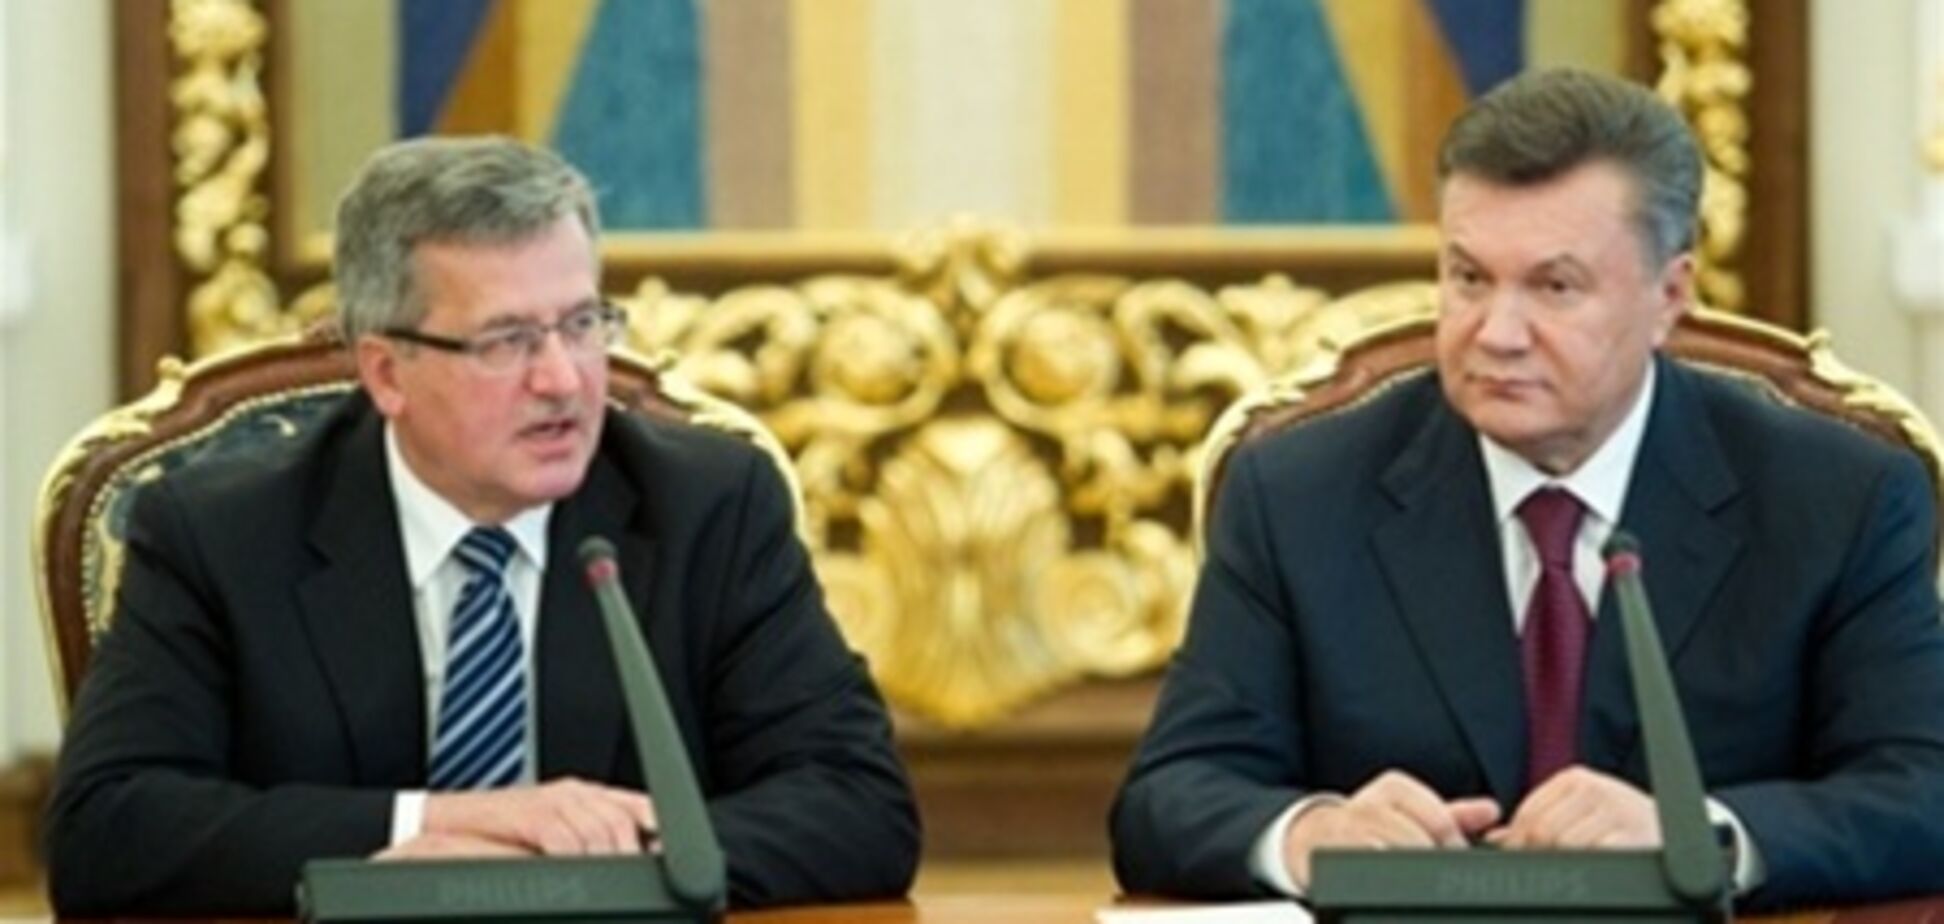 20 февраля Янукович поедет в гости к Коморовскому